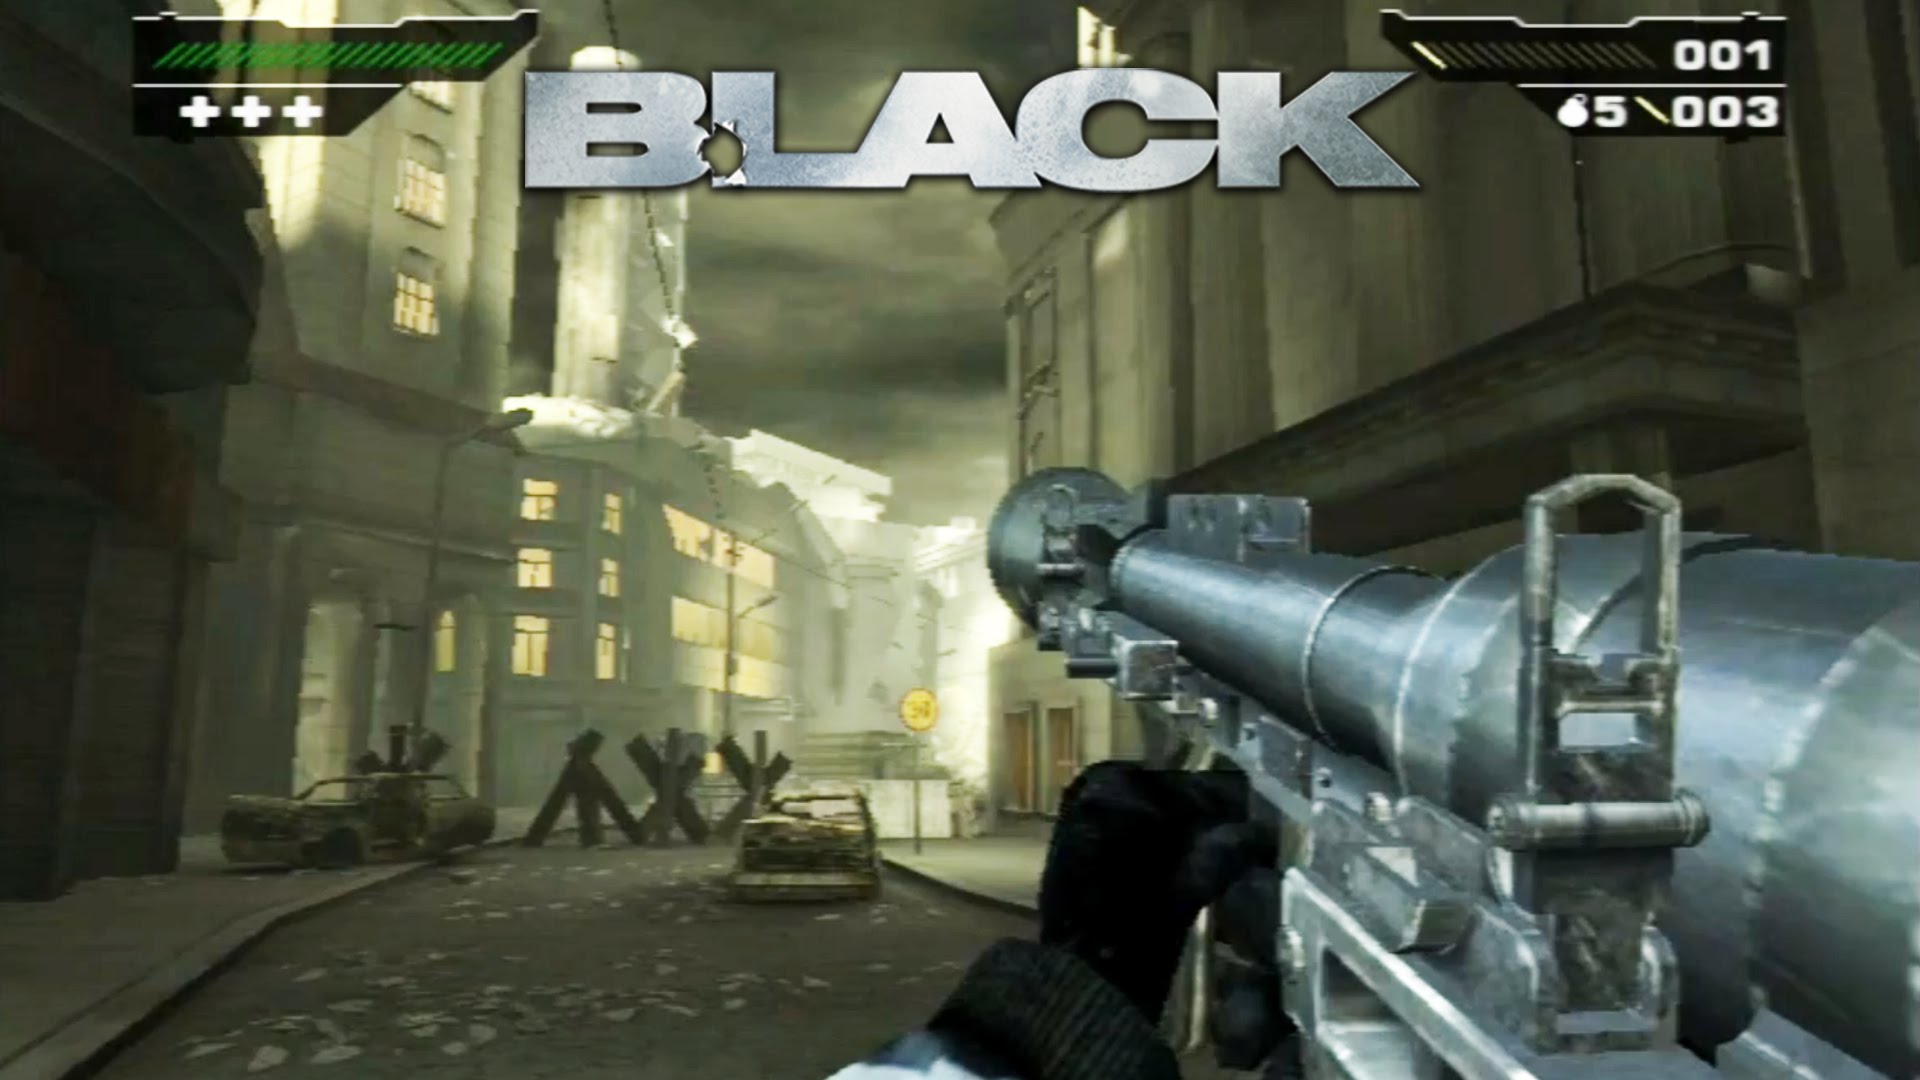 Shooter amado, Black chega ao Xbox One via EA Access e retrocompatibilidade  | Voxel